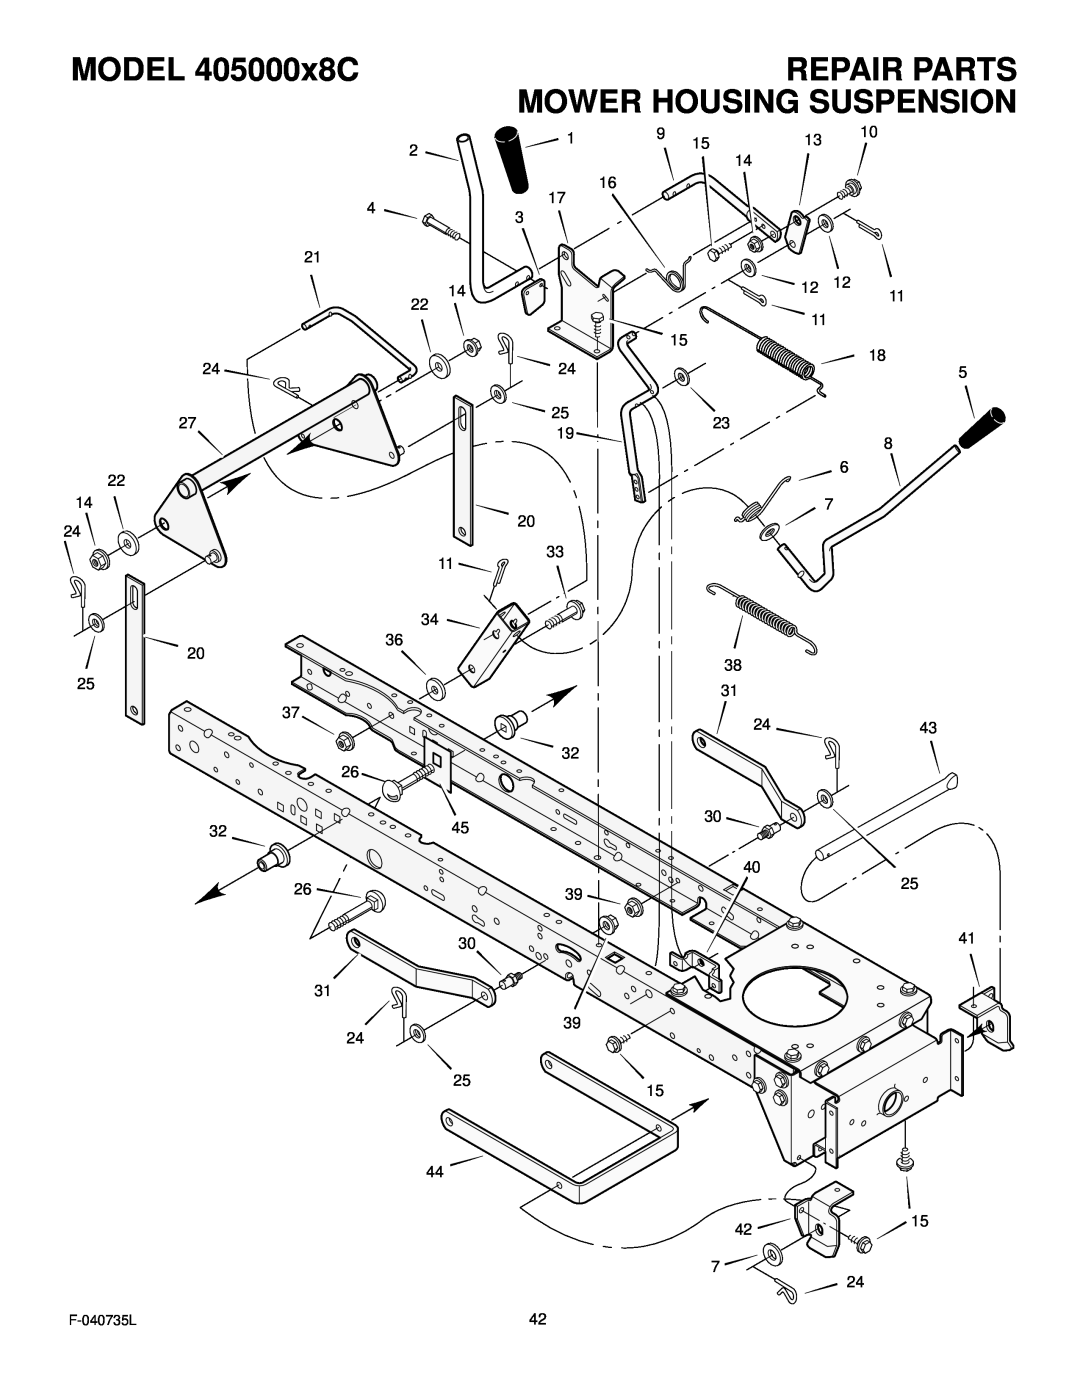 Murray manual Mower Housing Suspension, MODEL 405000x8C, Repair Parts, F-040735L 